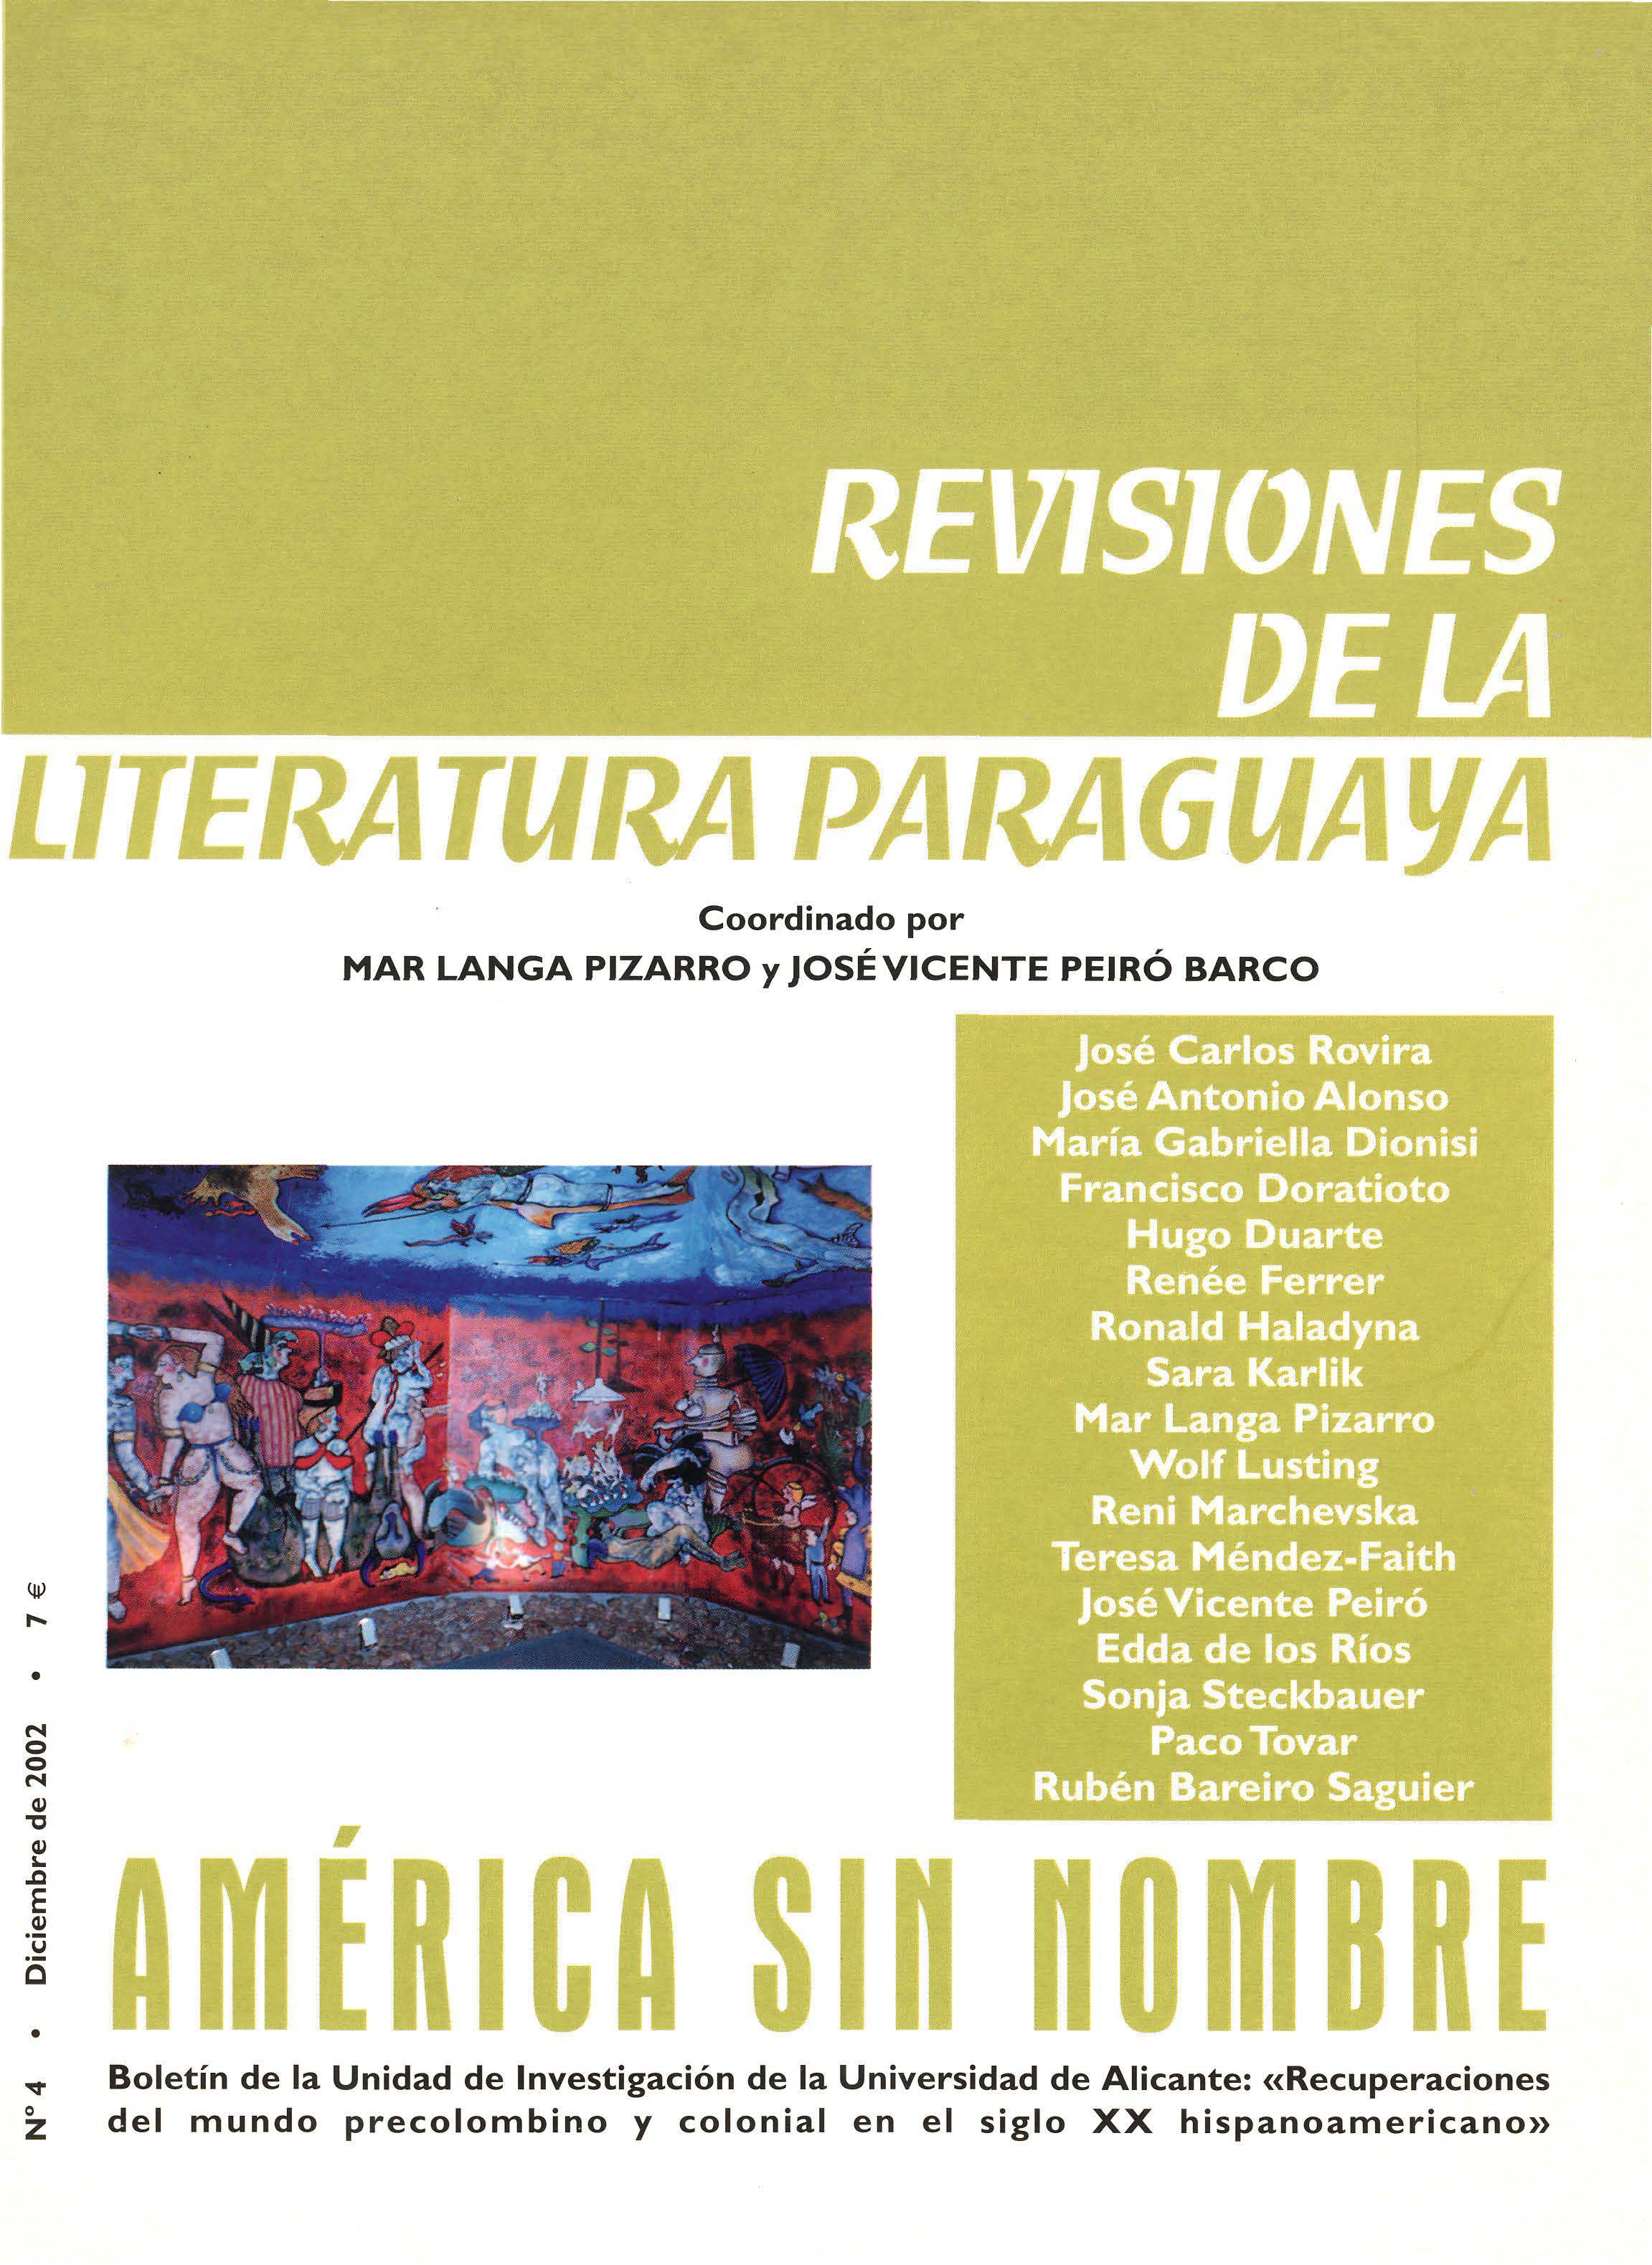 					Ver Núm. 4: Revisiones de la literatura paraguaya
				